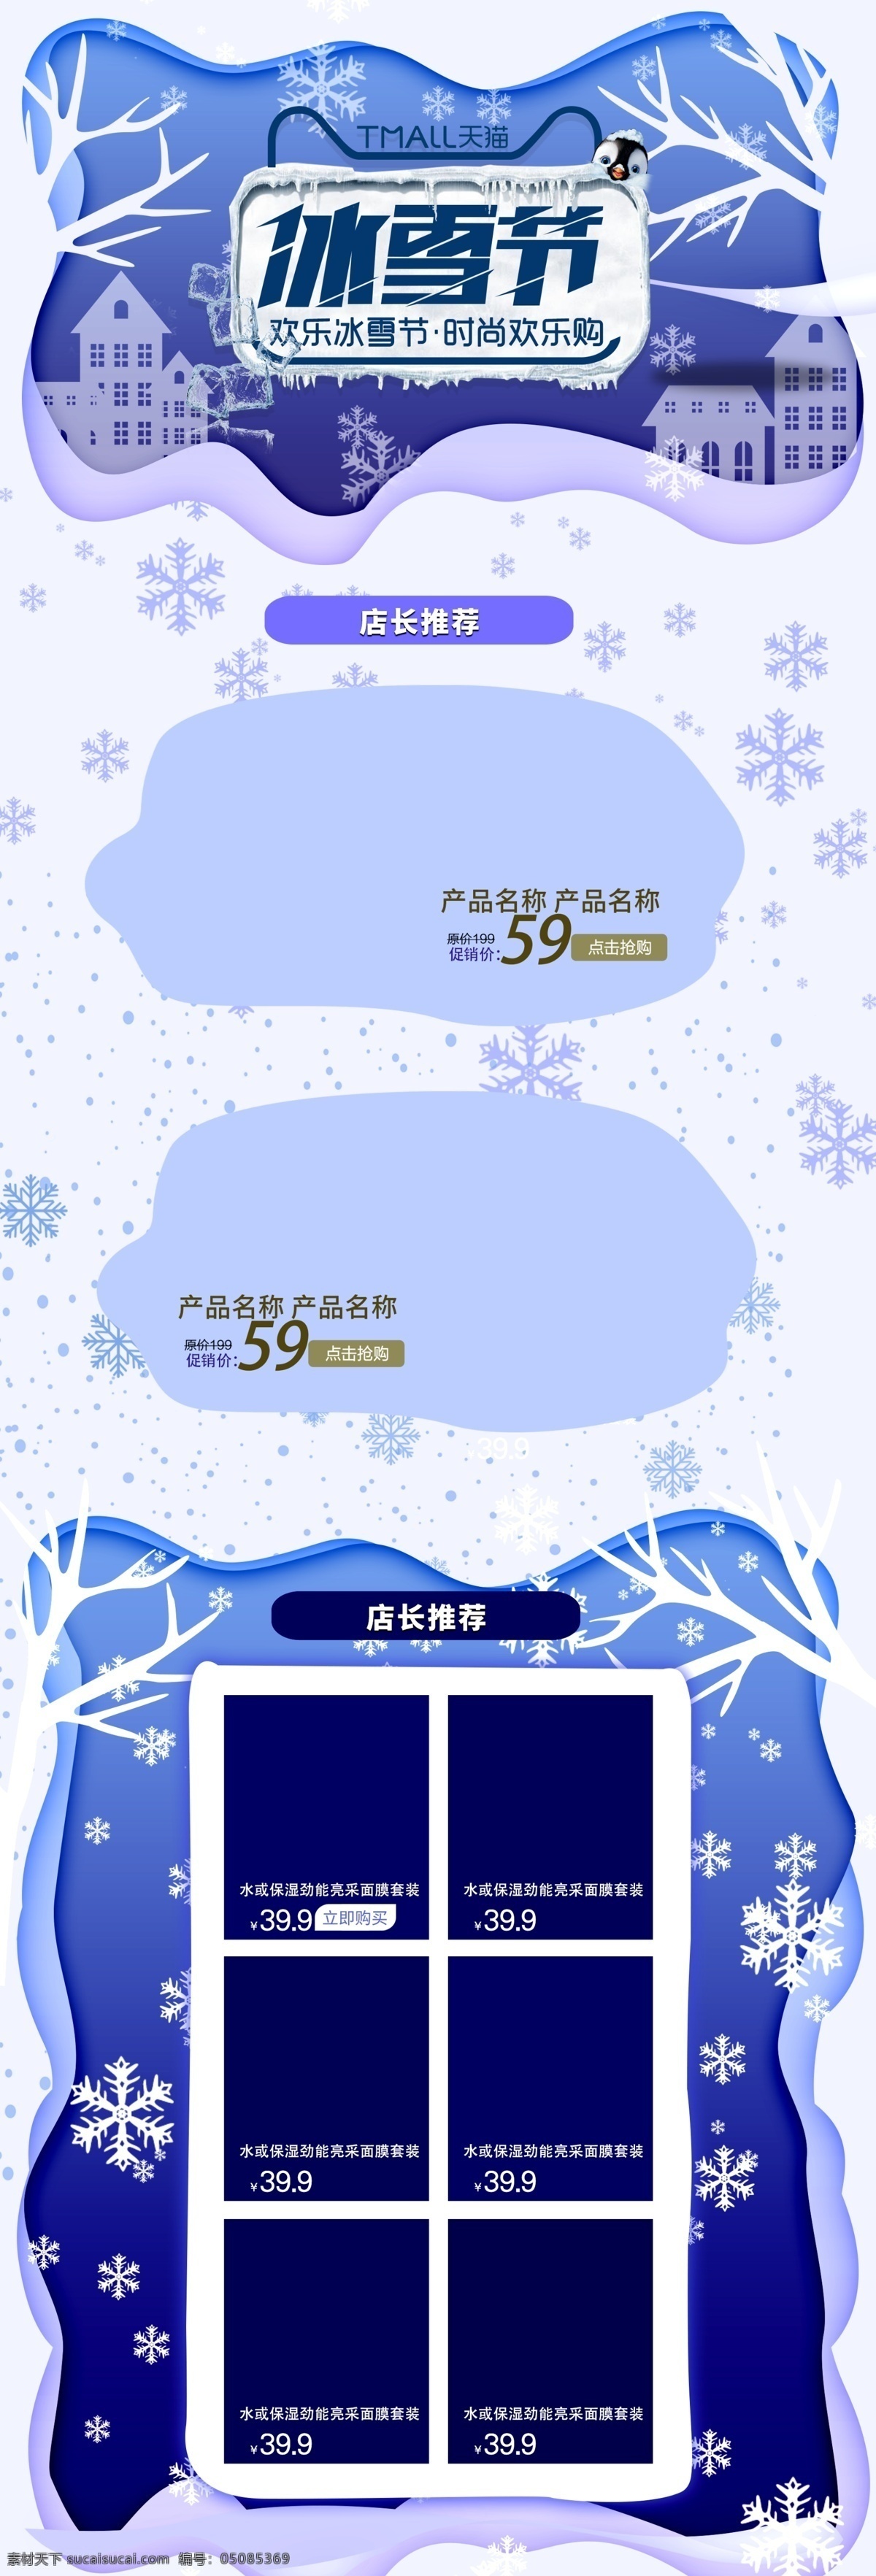 冰雪节 蓝色 淘宝 天猫 首页 促销活动 模板 淘宝首页 天猫首页 手机首页